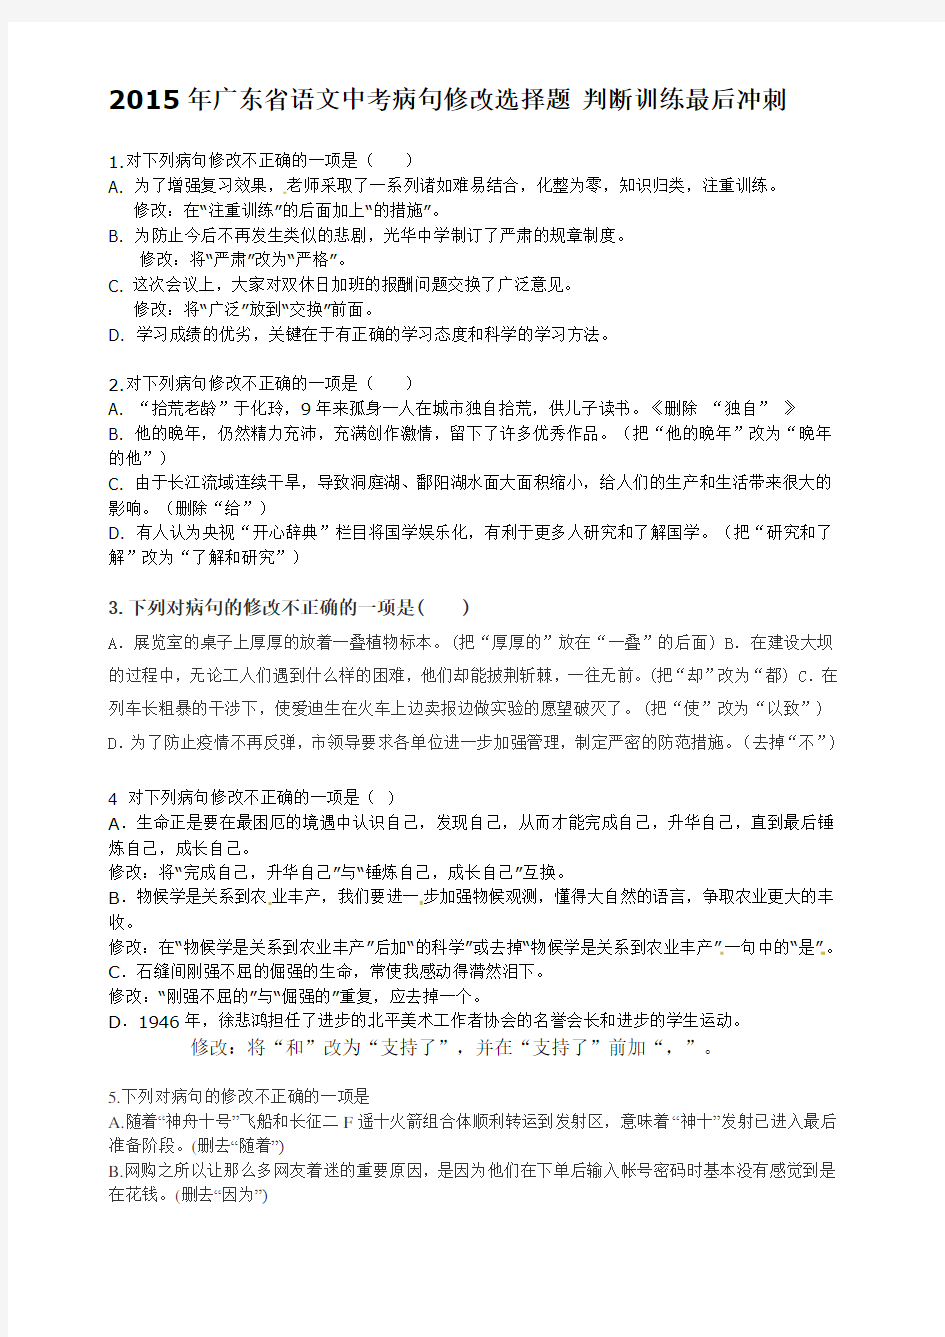 2015年广东省语文中考病句修改选择题出自 张雯萱 整理